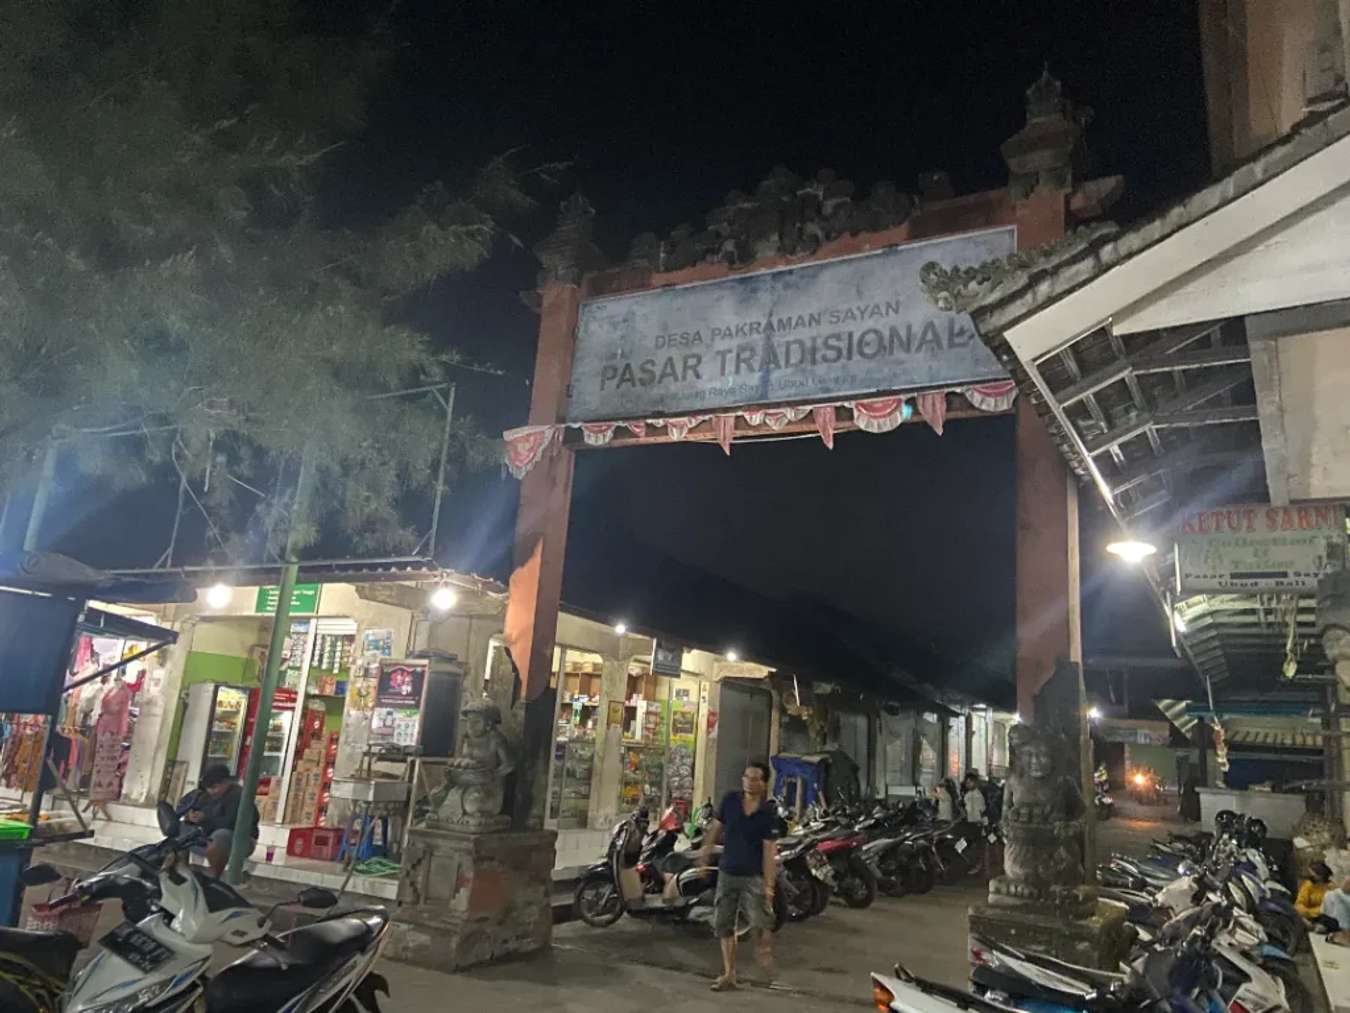 Pasar trong tiếng Indonesia có nghĩa là chợ